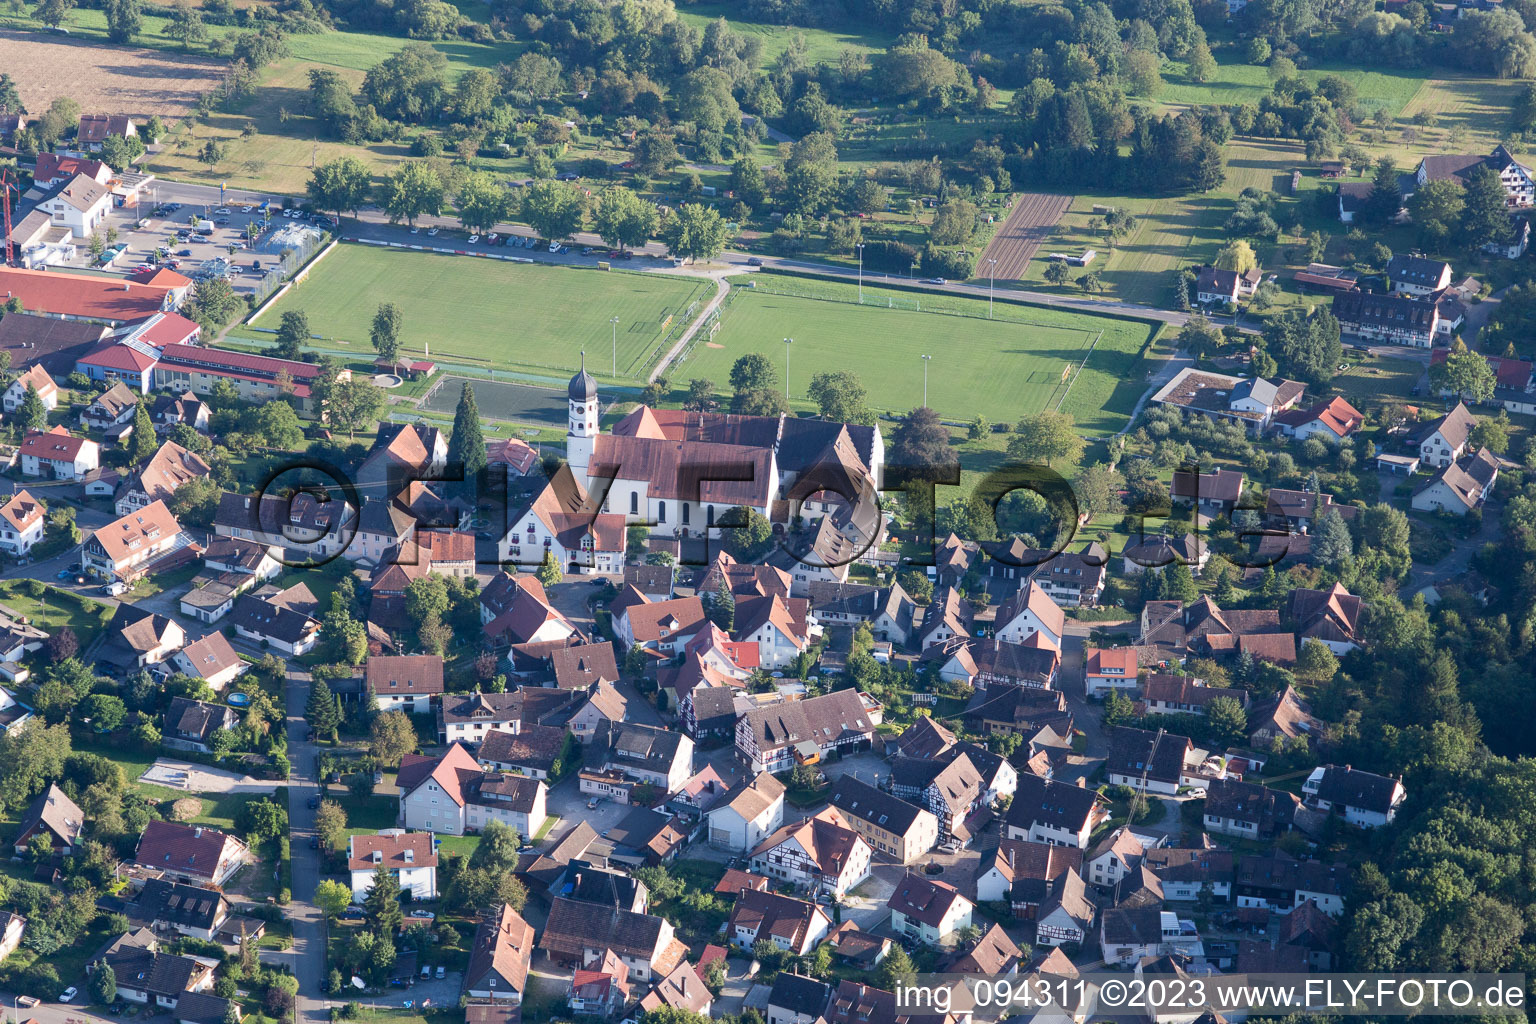 Vue aérienne de Öhningen dans le département Bade-Wurtemberg, Allemagne